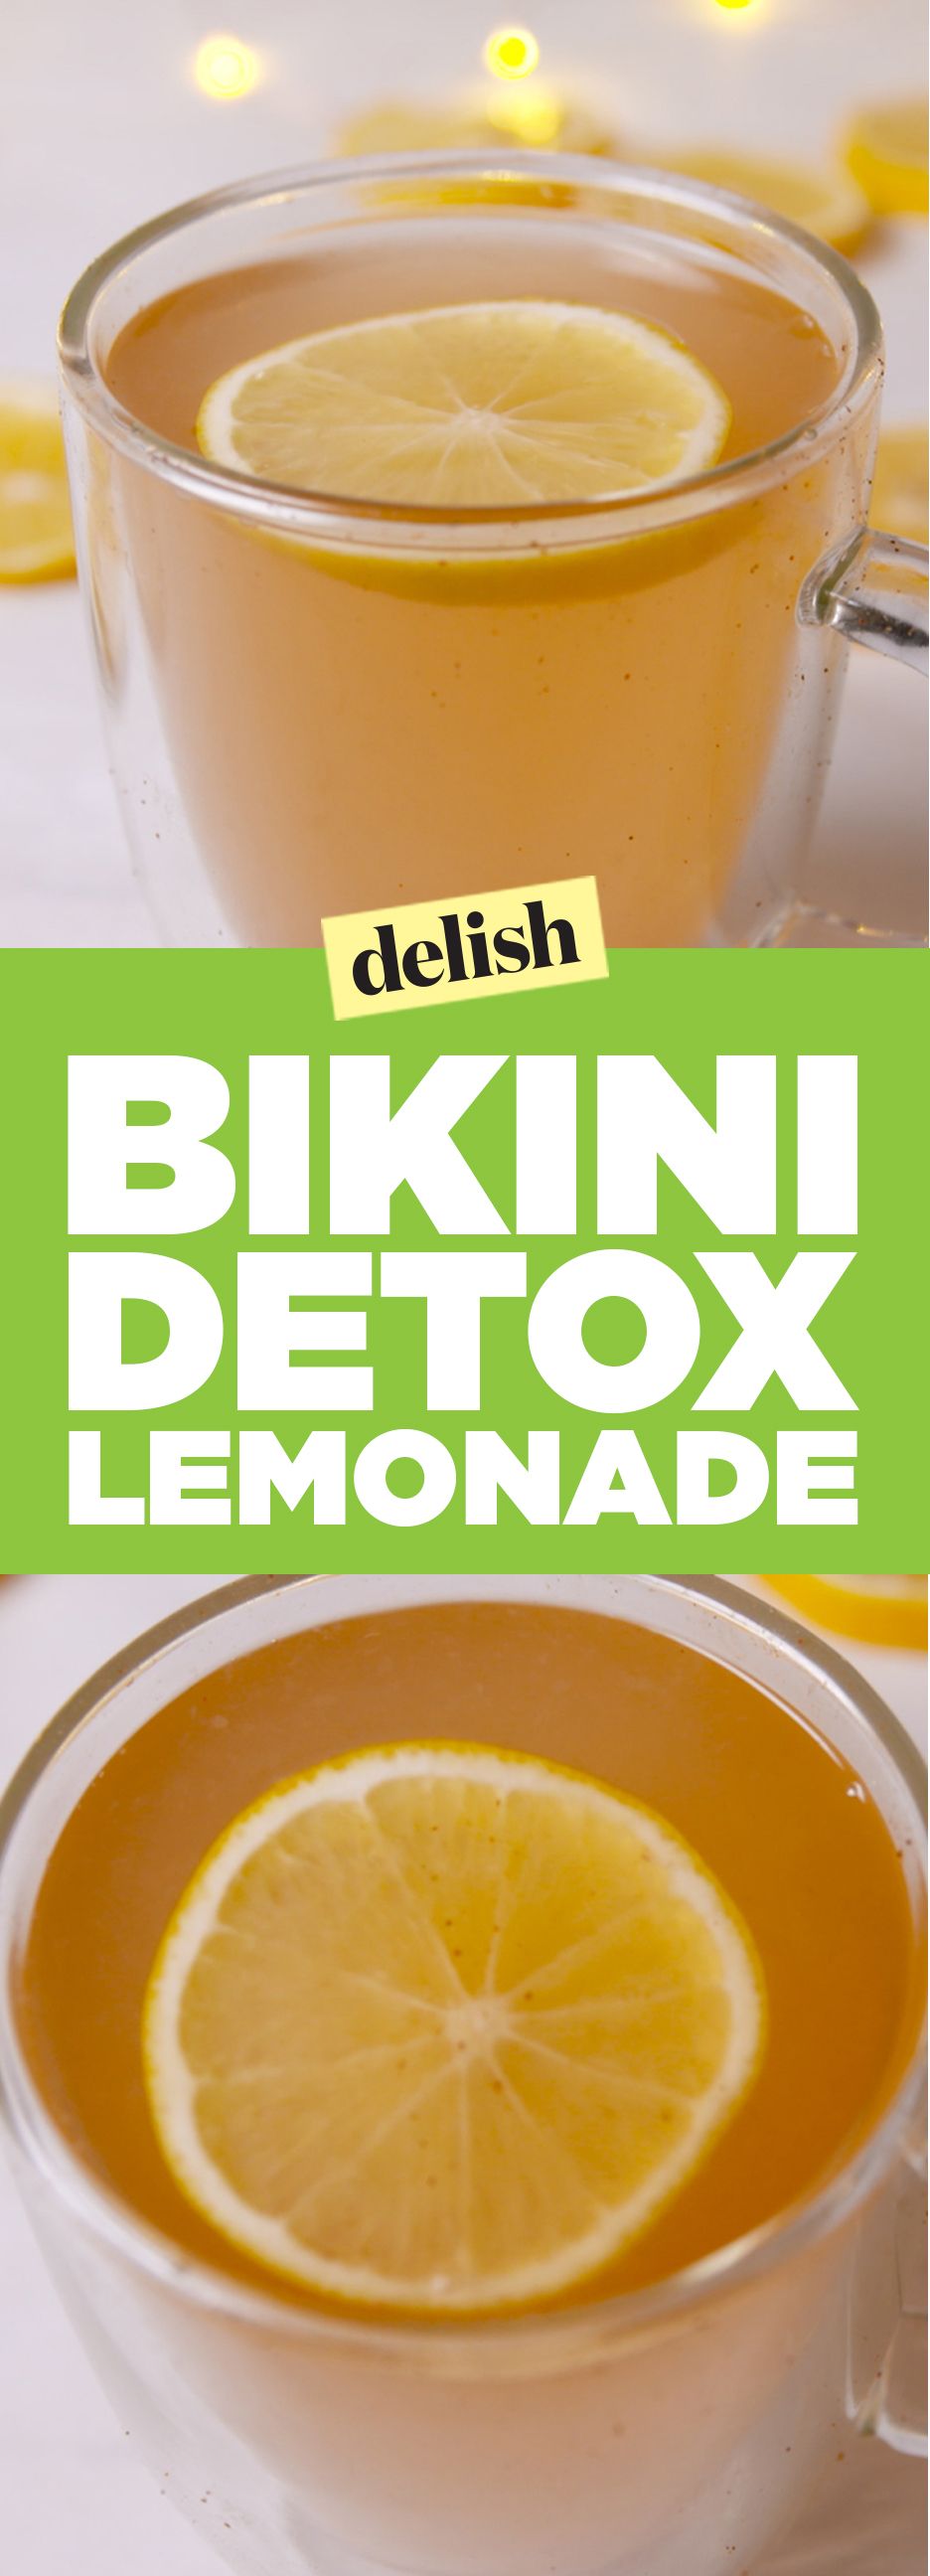 Detox Lemonade Pinterest